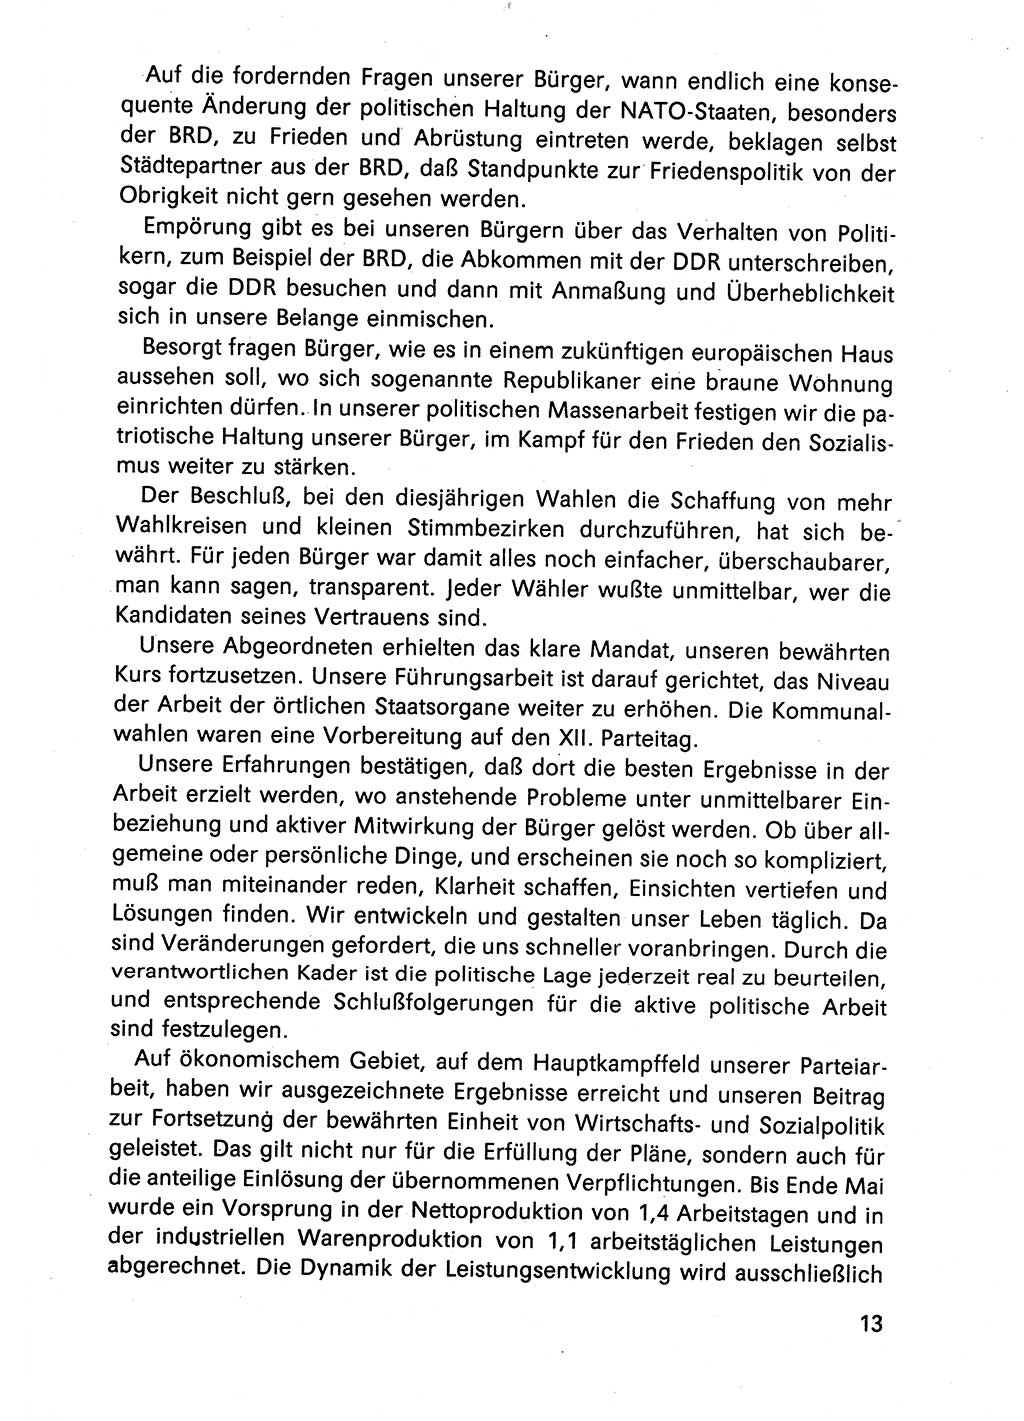 Diskussionsreden, 8. Tagung des ZK (Zentralkomitee) der SED (Sozialistische Einheitspartei Deutschlands) [Deutsche Demokratische Republik (DDR)] 1989, Seite 13 (Disk.-Red. 8. Tg. ZK SED DDR 1989, S. 13)